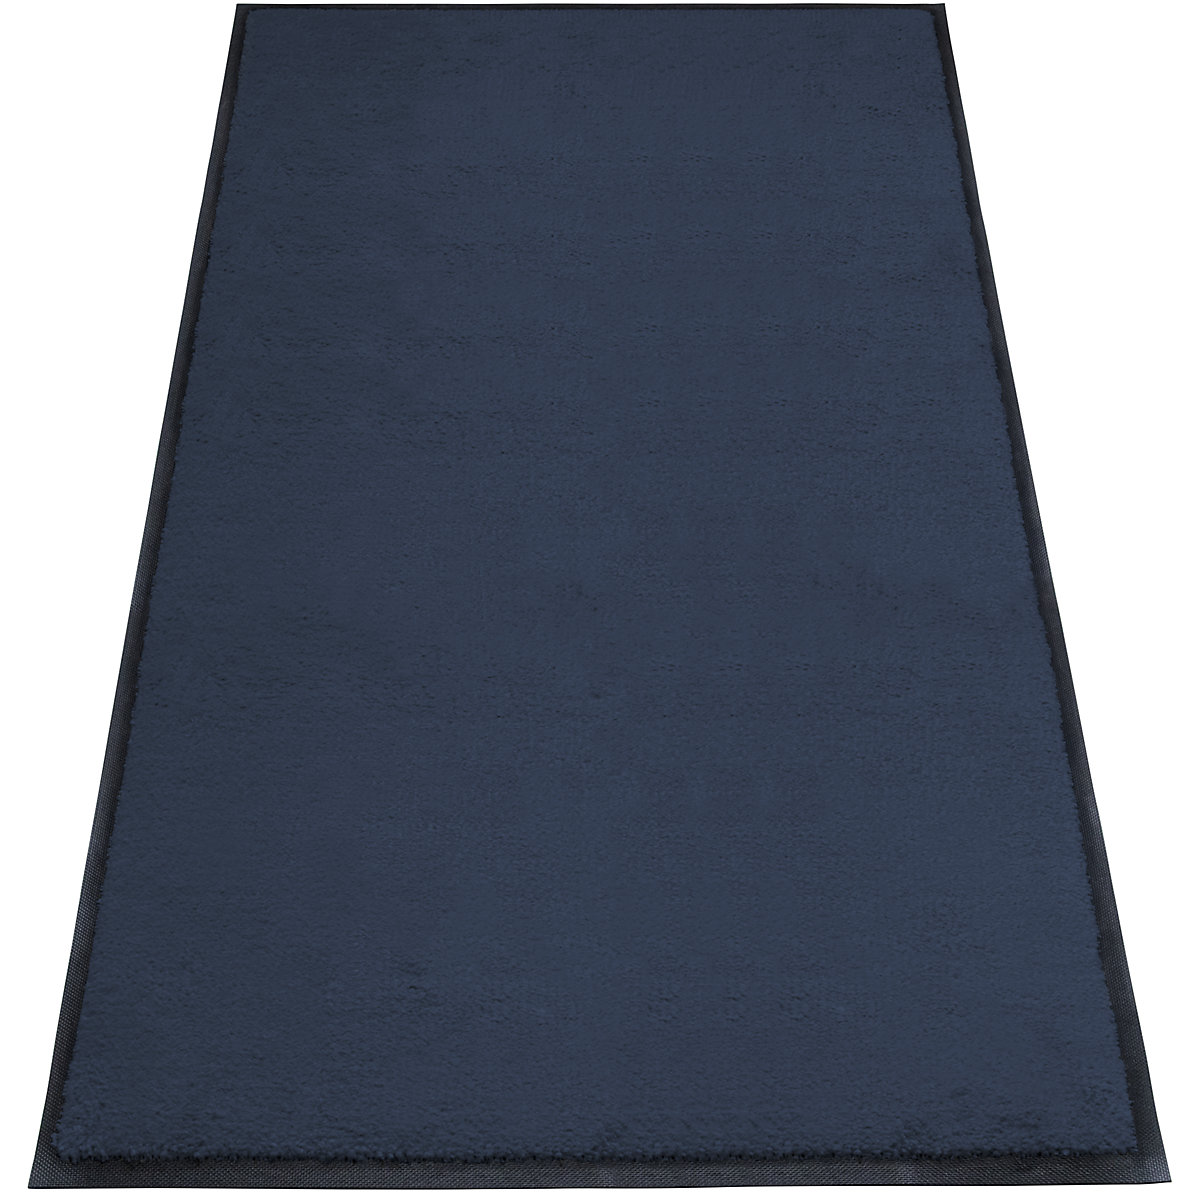 Tapis de propreté EAZYCARE STYLE, L x l 1500 x 850 mm, bleu acier